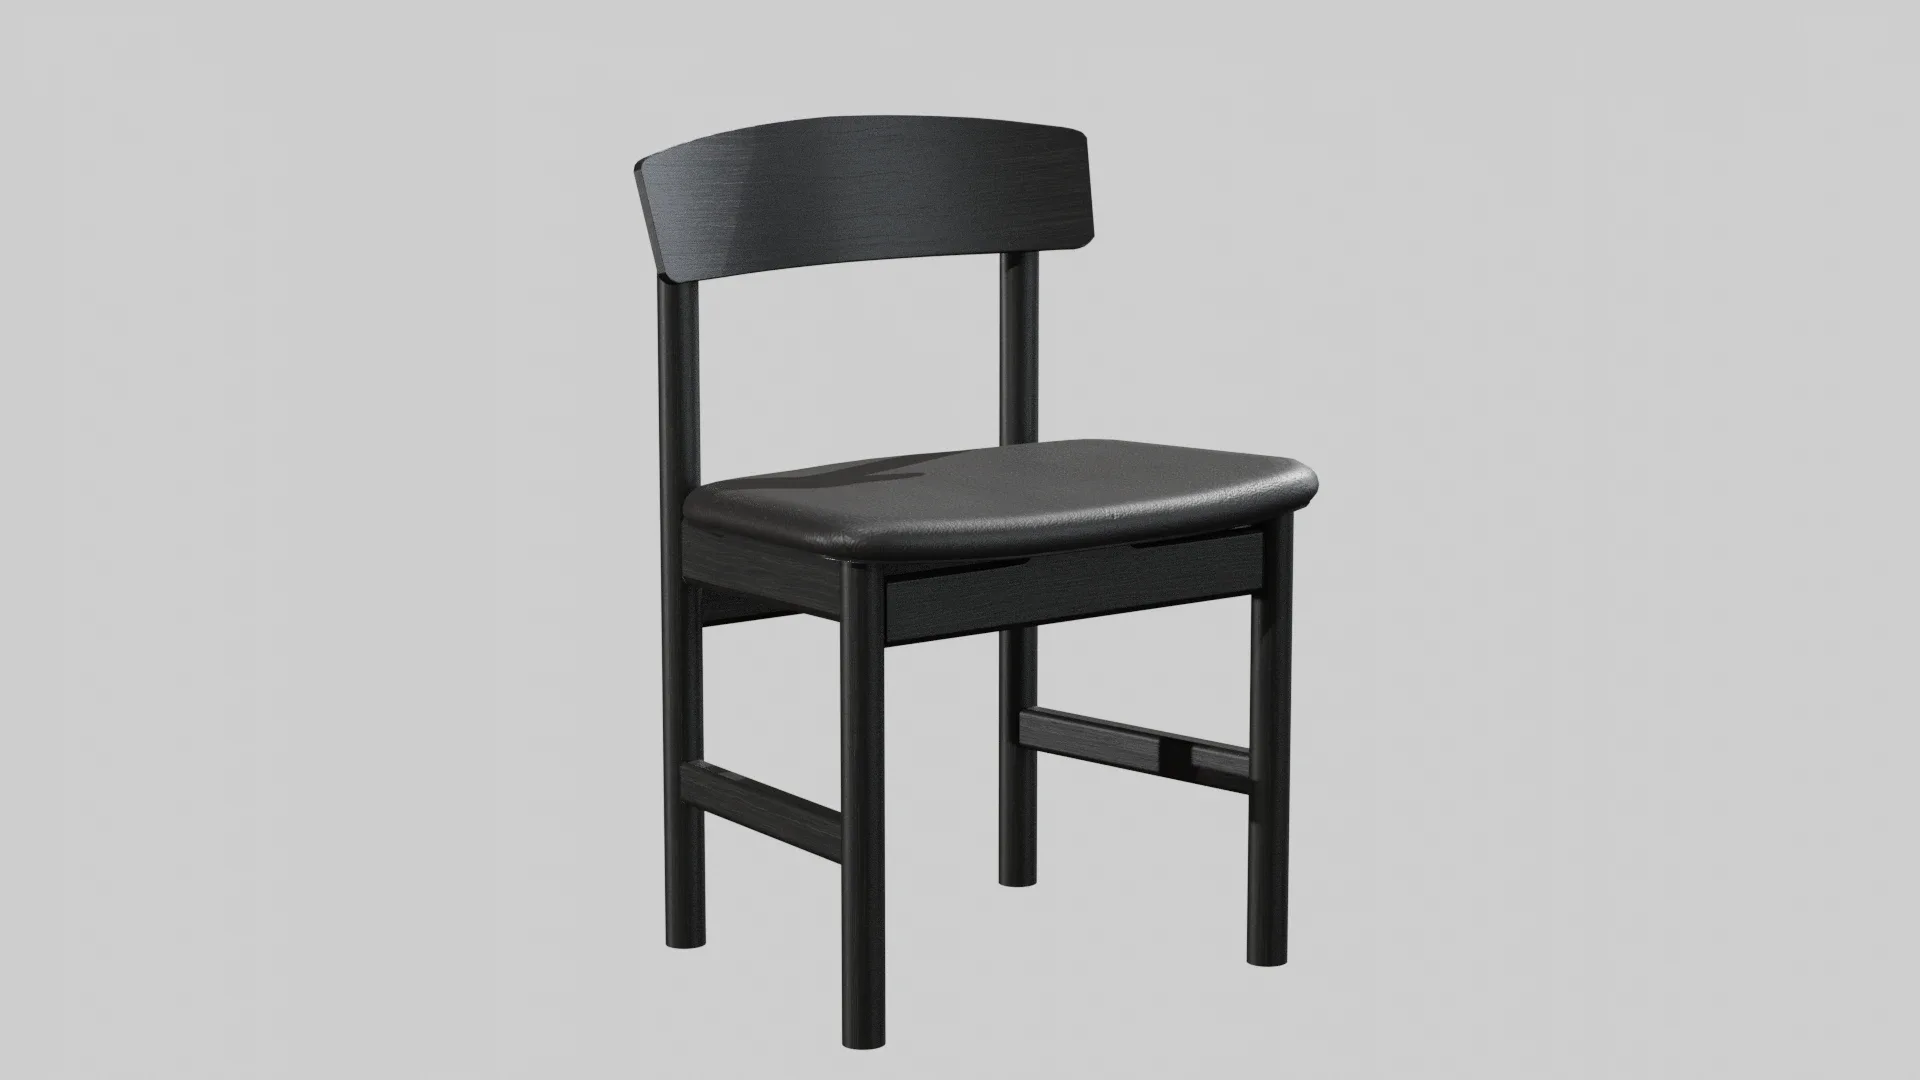 Mogensen Chair Model-3236 Black lacquered